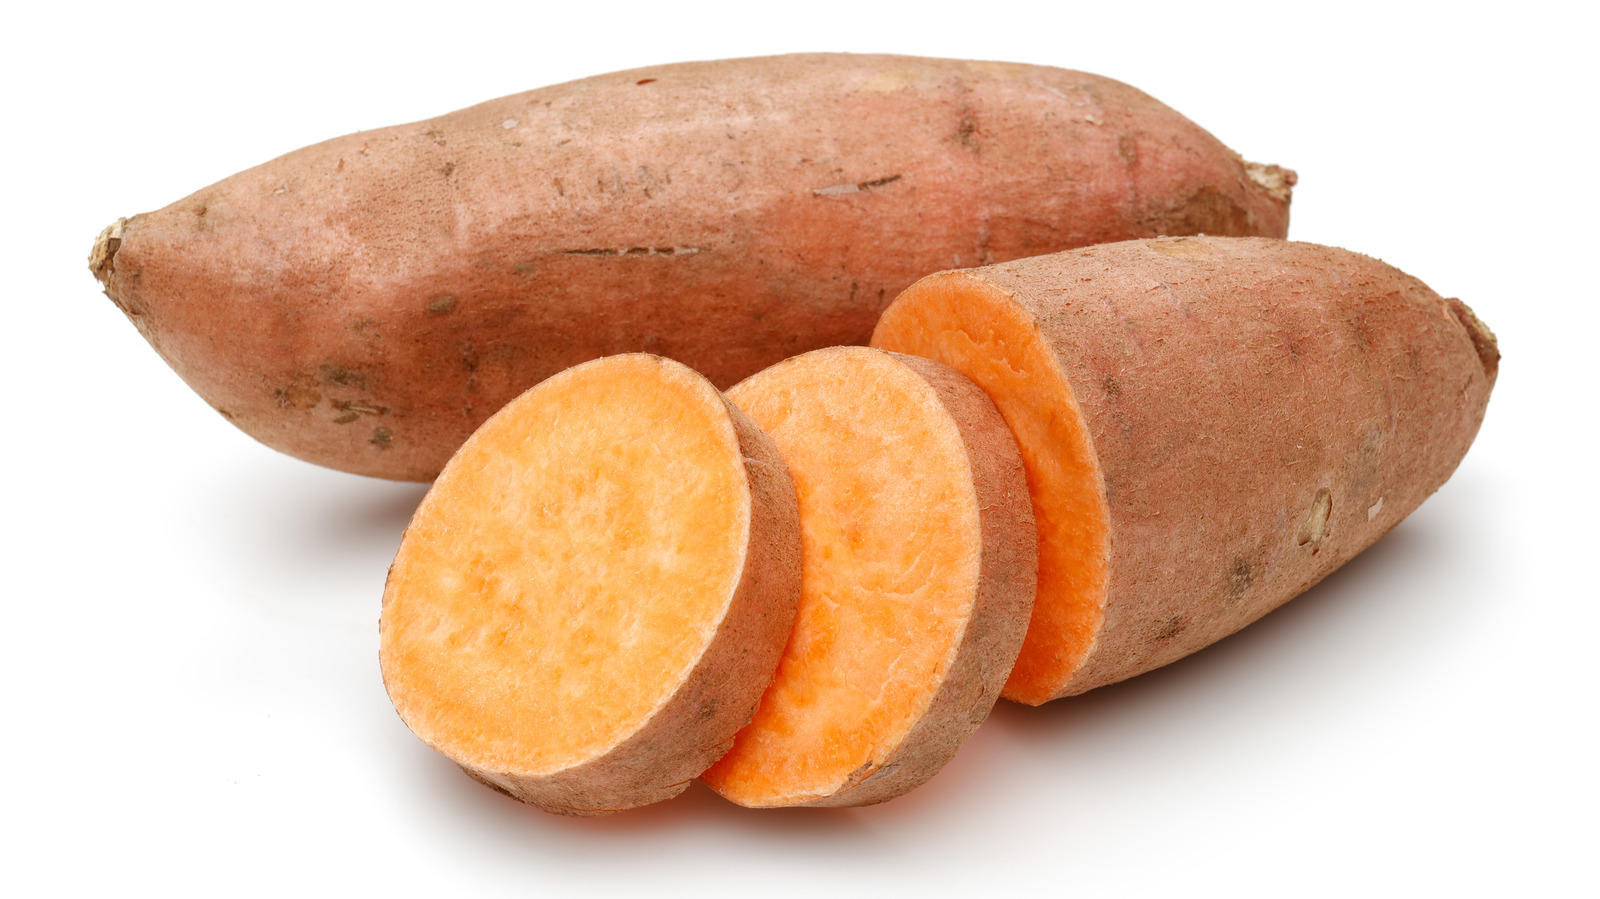 a sweet potato